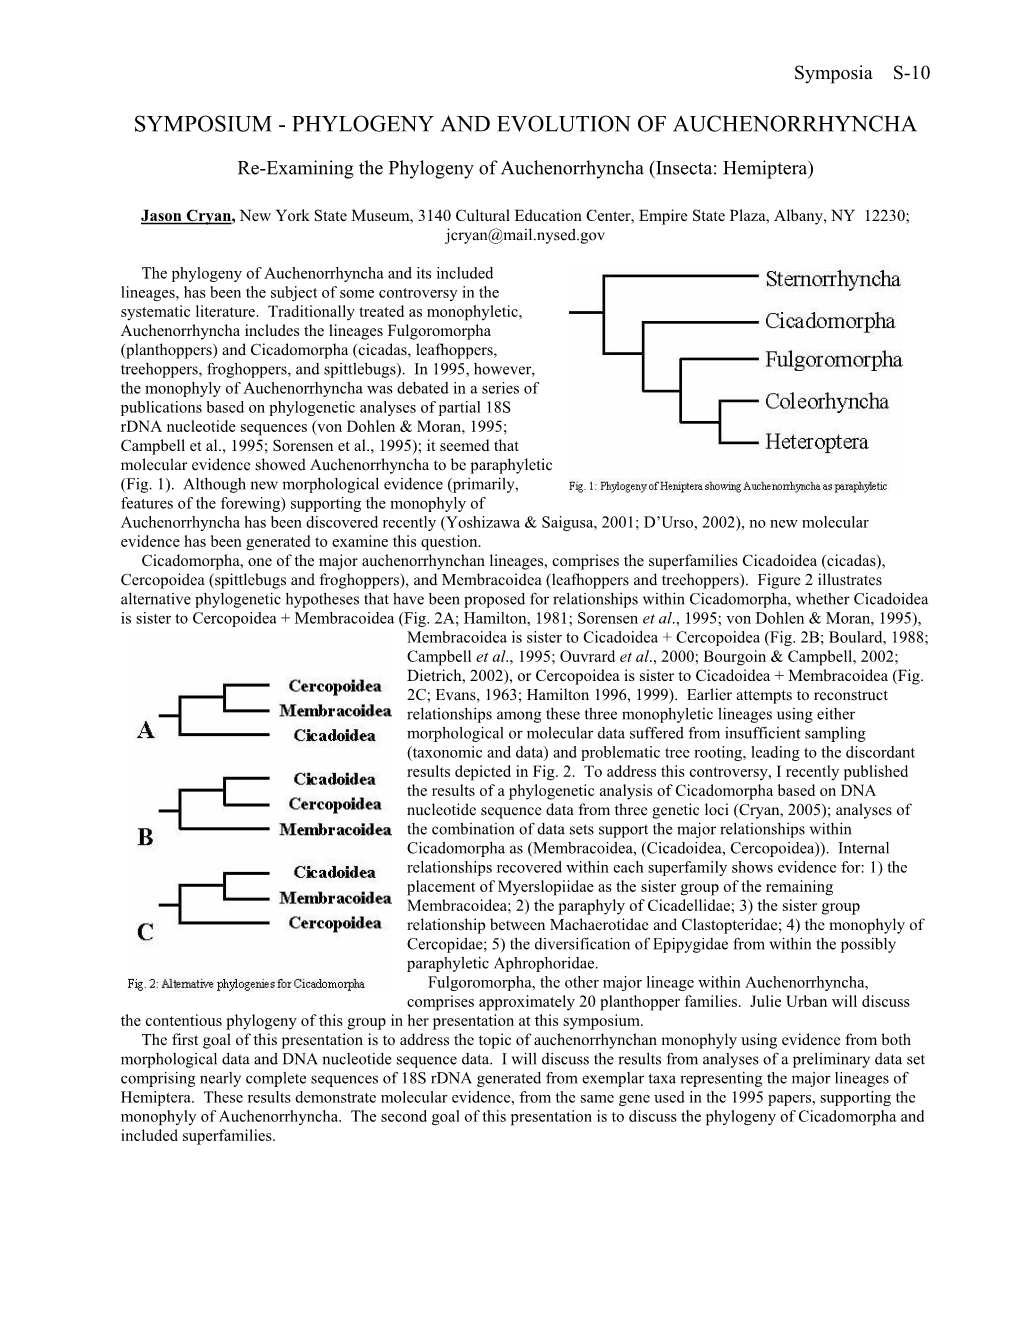 Phylogeny and Evolution of Auchenorrhyncha